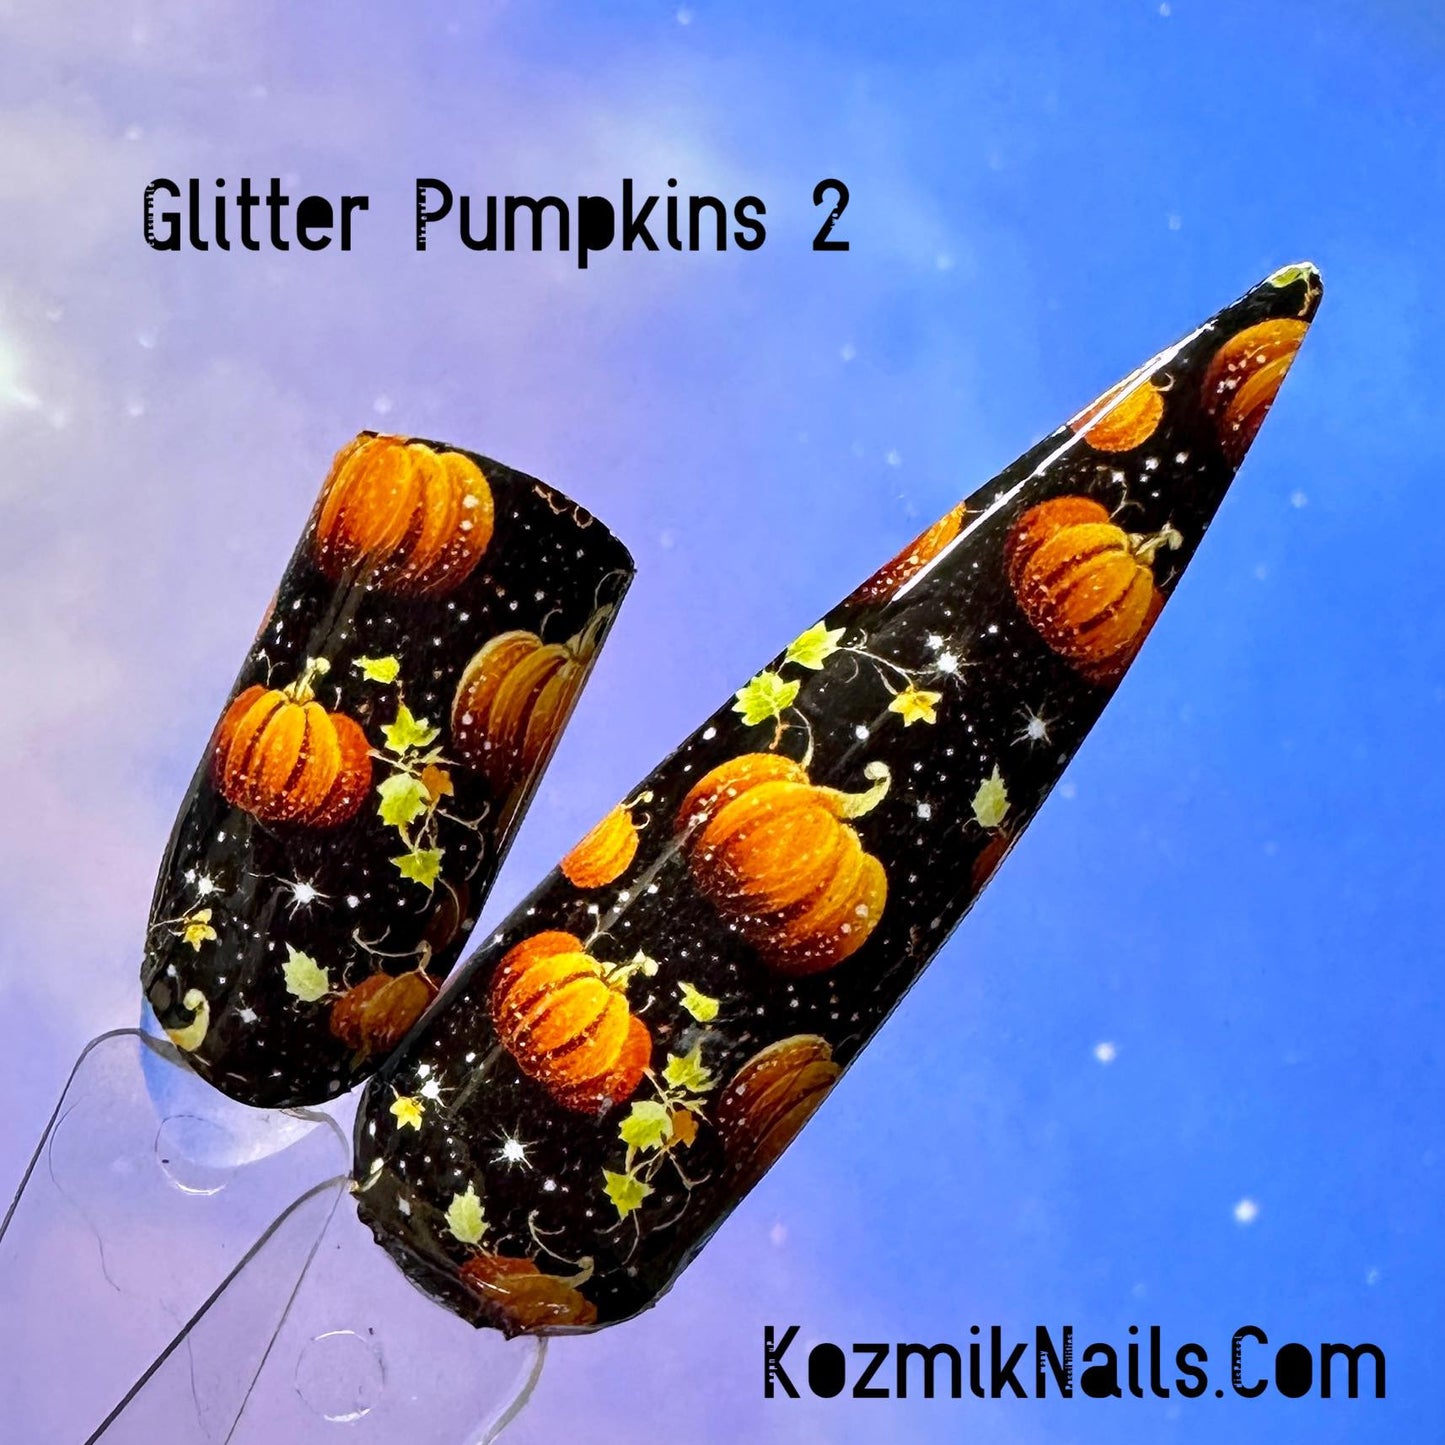 Glitter Pumpkins 2